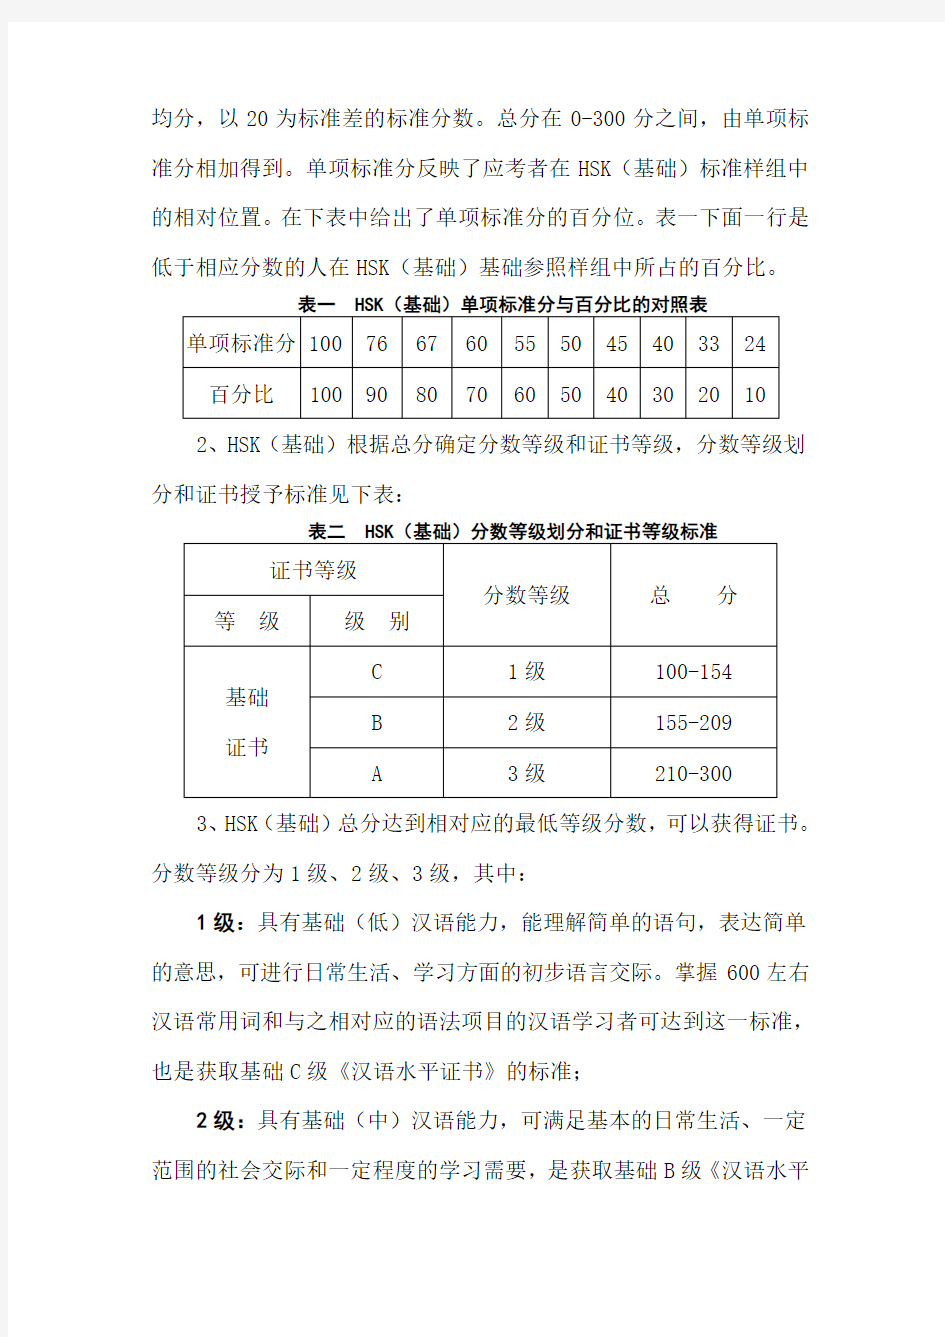 汉语水平考试(HSK)分数体系